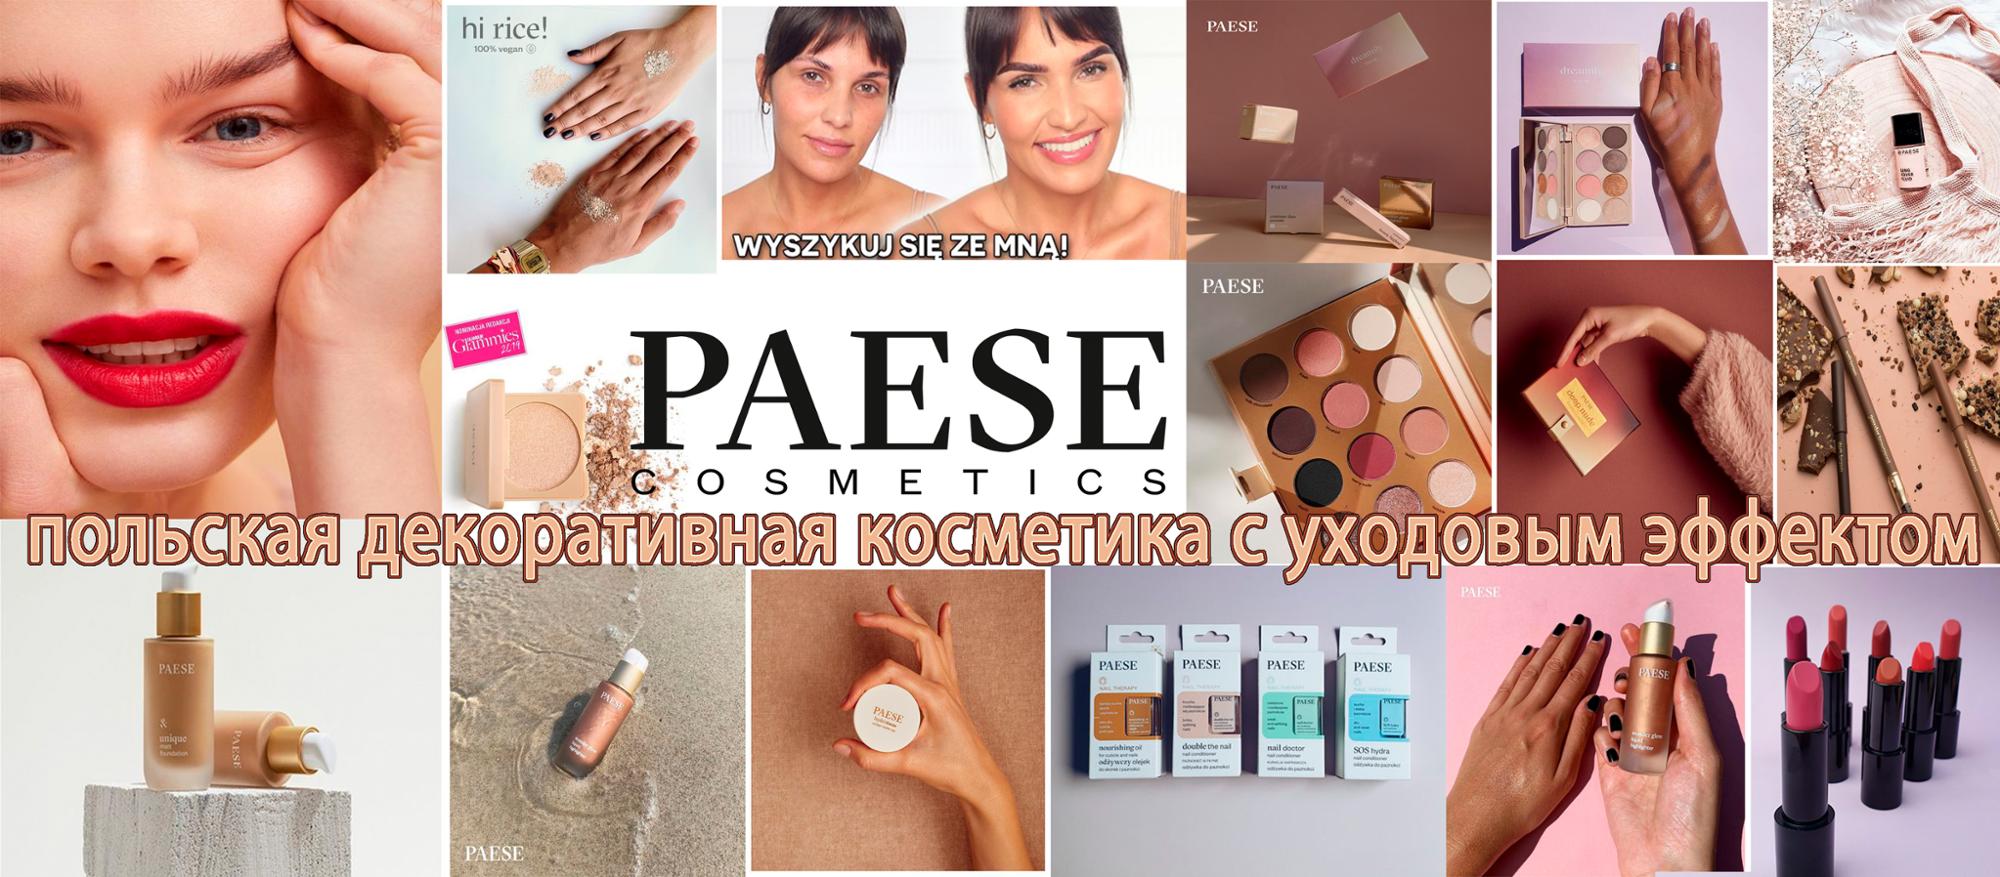 Польская косметика для лица профессиональная, декоративная, для ухода за кожей